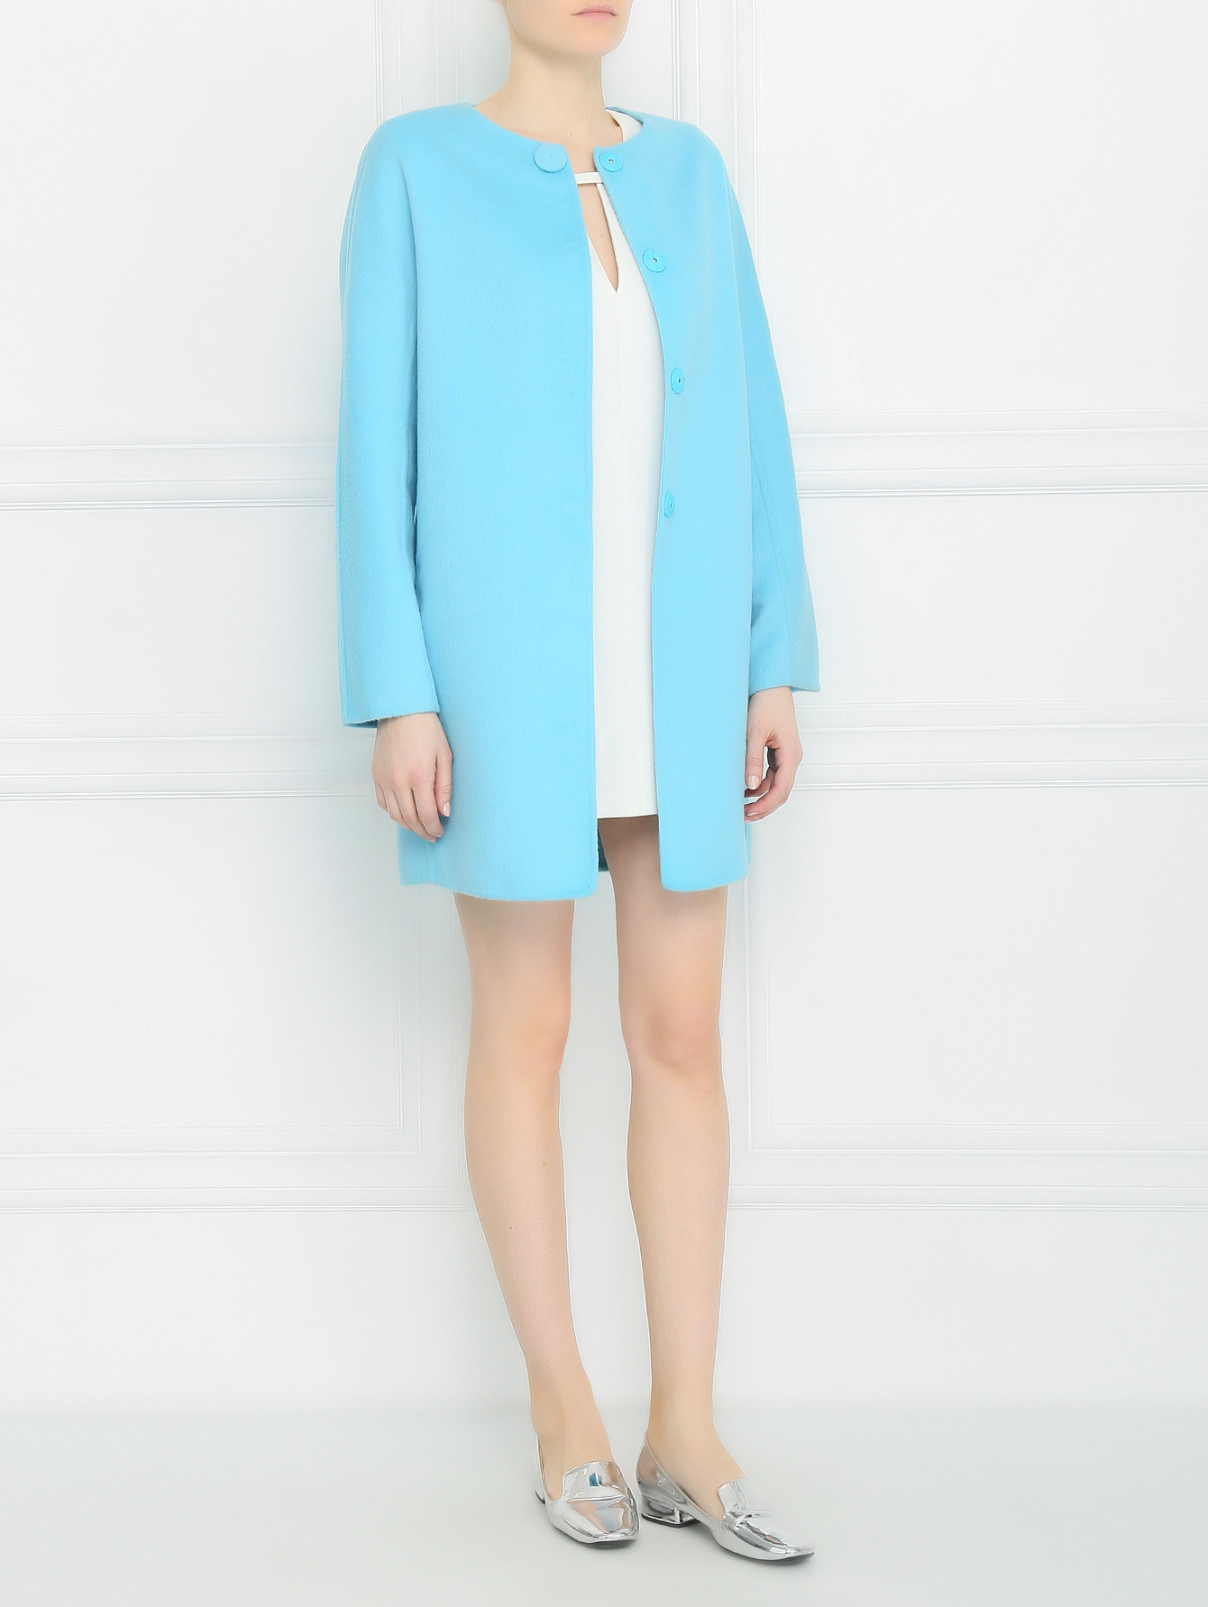 Пальто из шерсти и ангоры Ermanno Scervino  –  Модель Общий вид  – Цвет:  Синий